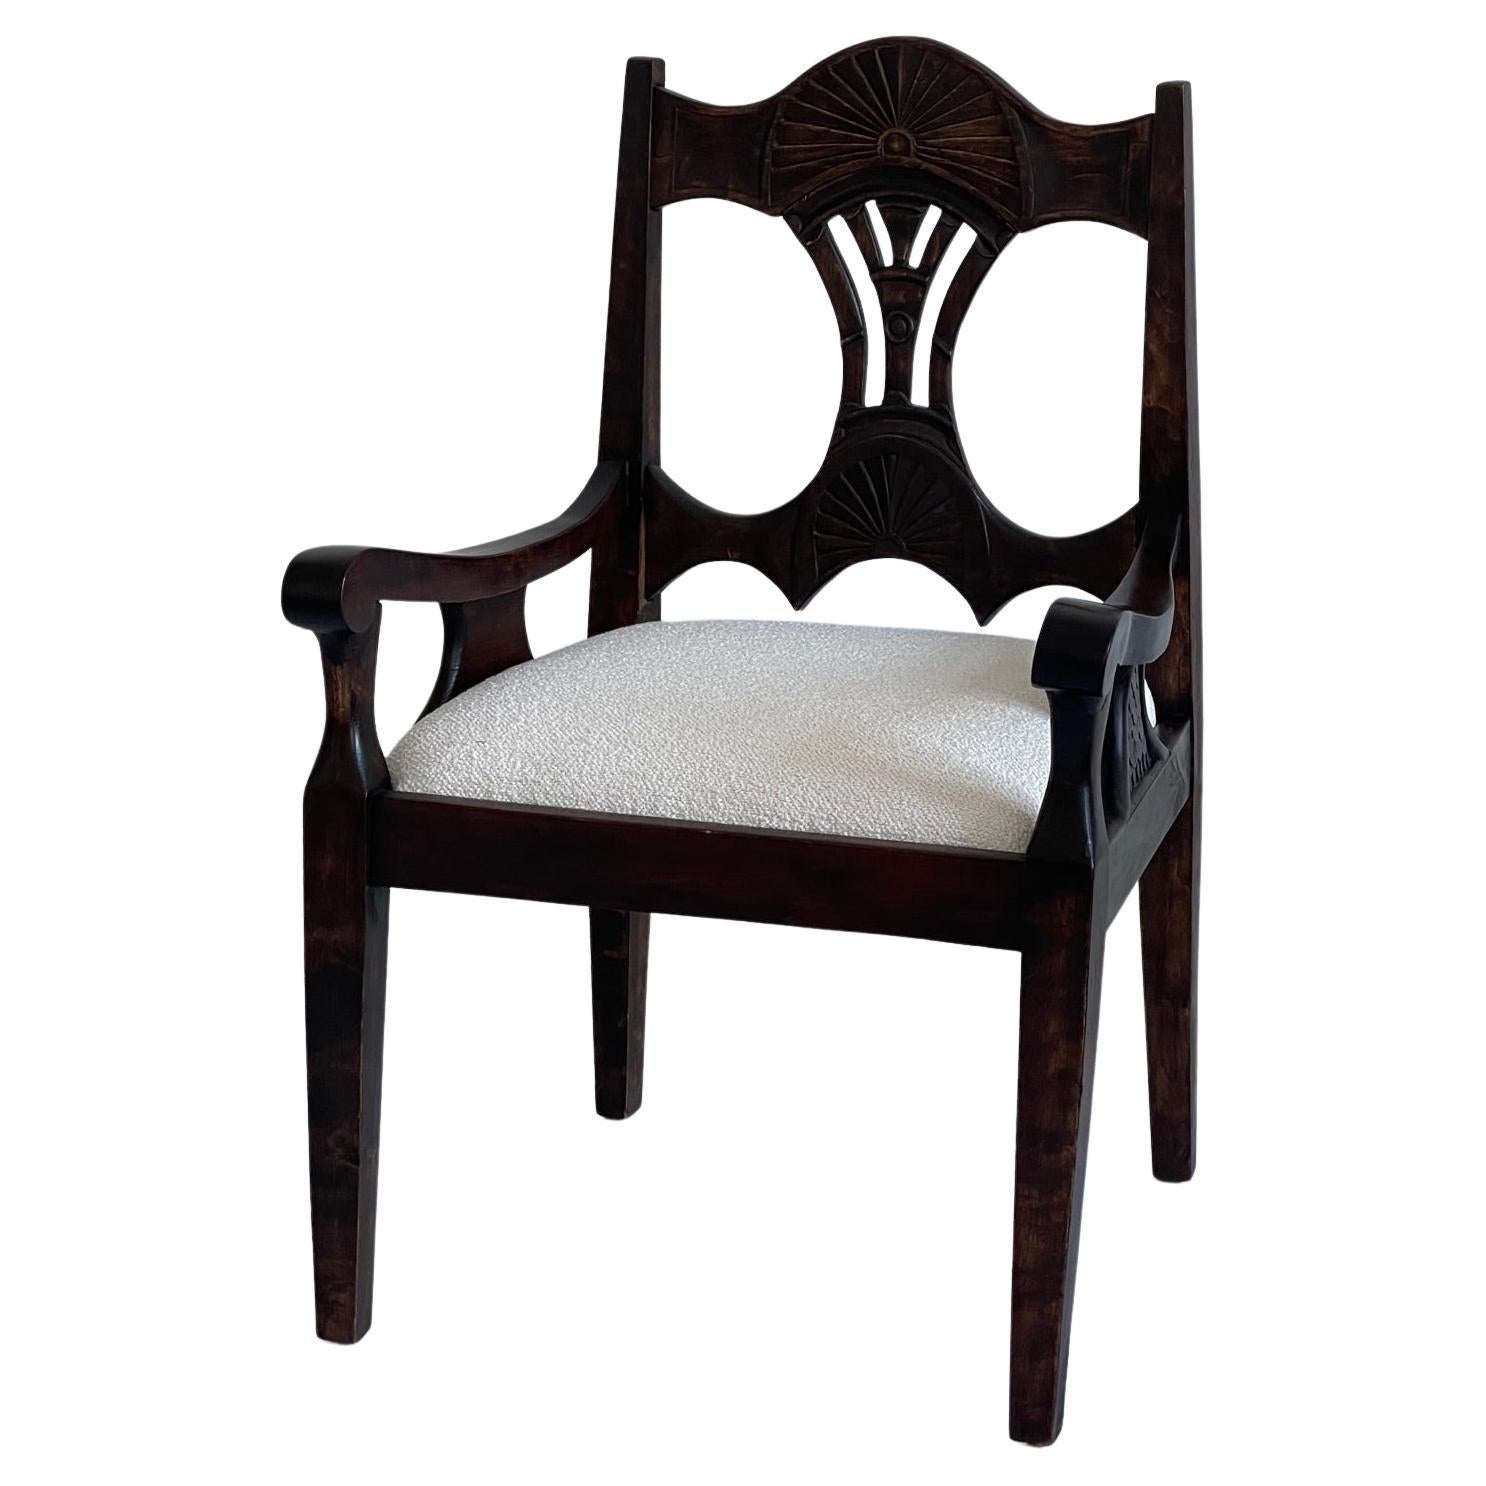 Eleganter skandinavischer Jugendstilsessel des 19. Jahrhunderts aus massiver, gebeizter Eiche, gepolstert mit hochwertigem Bouclestoff. 

Trotz seines Alters befindet sich dieser Sessel in einem bemerkenswerten Zustand, der von der Qualität der